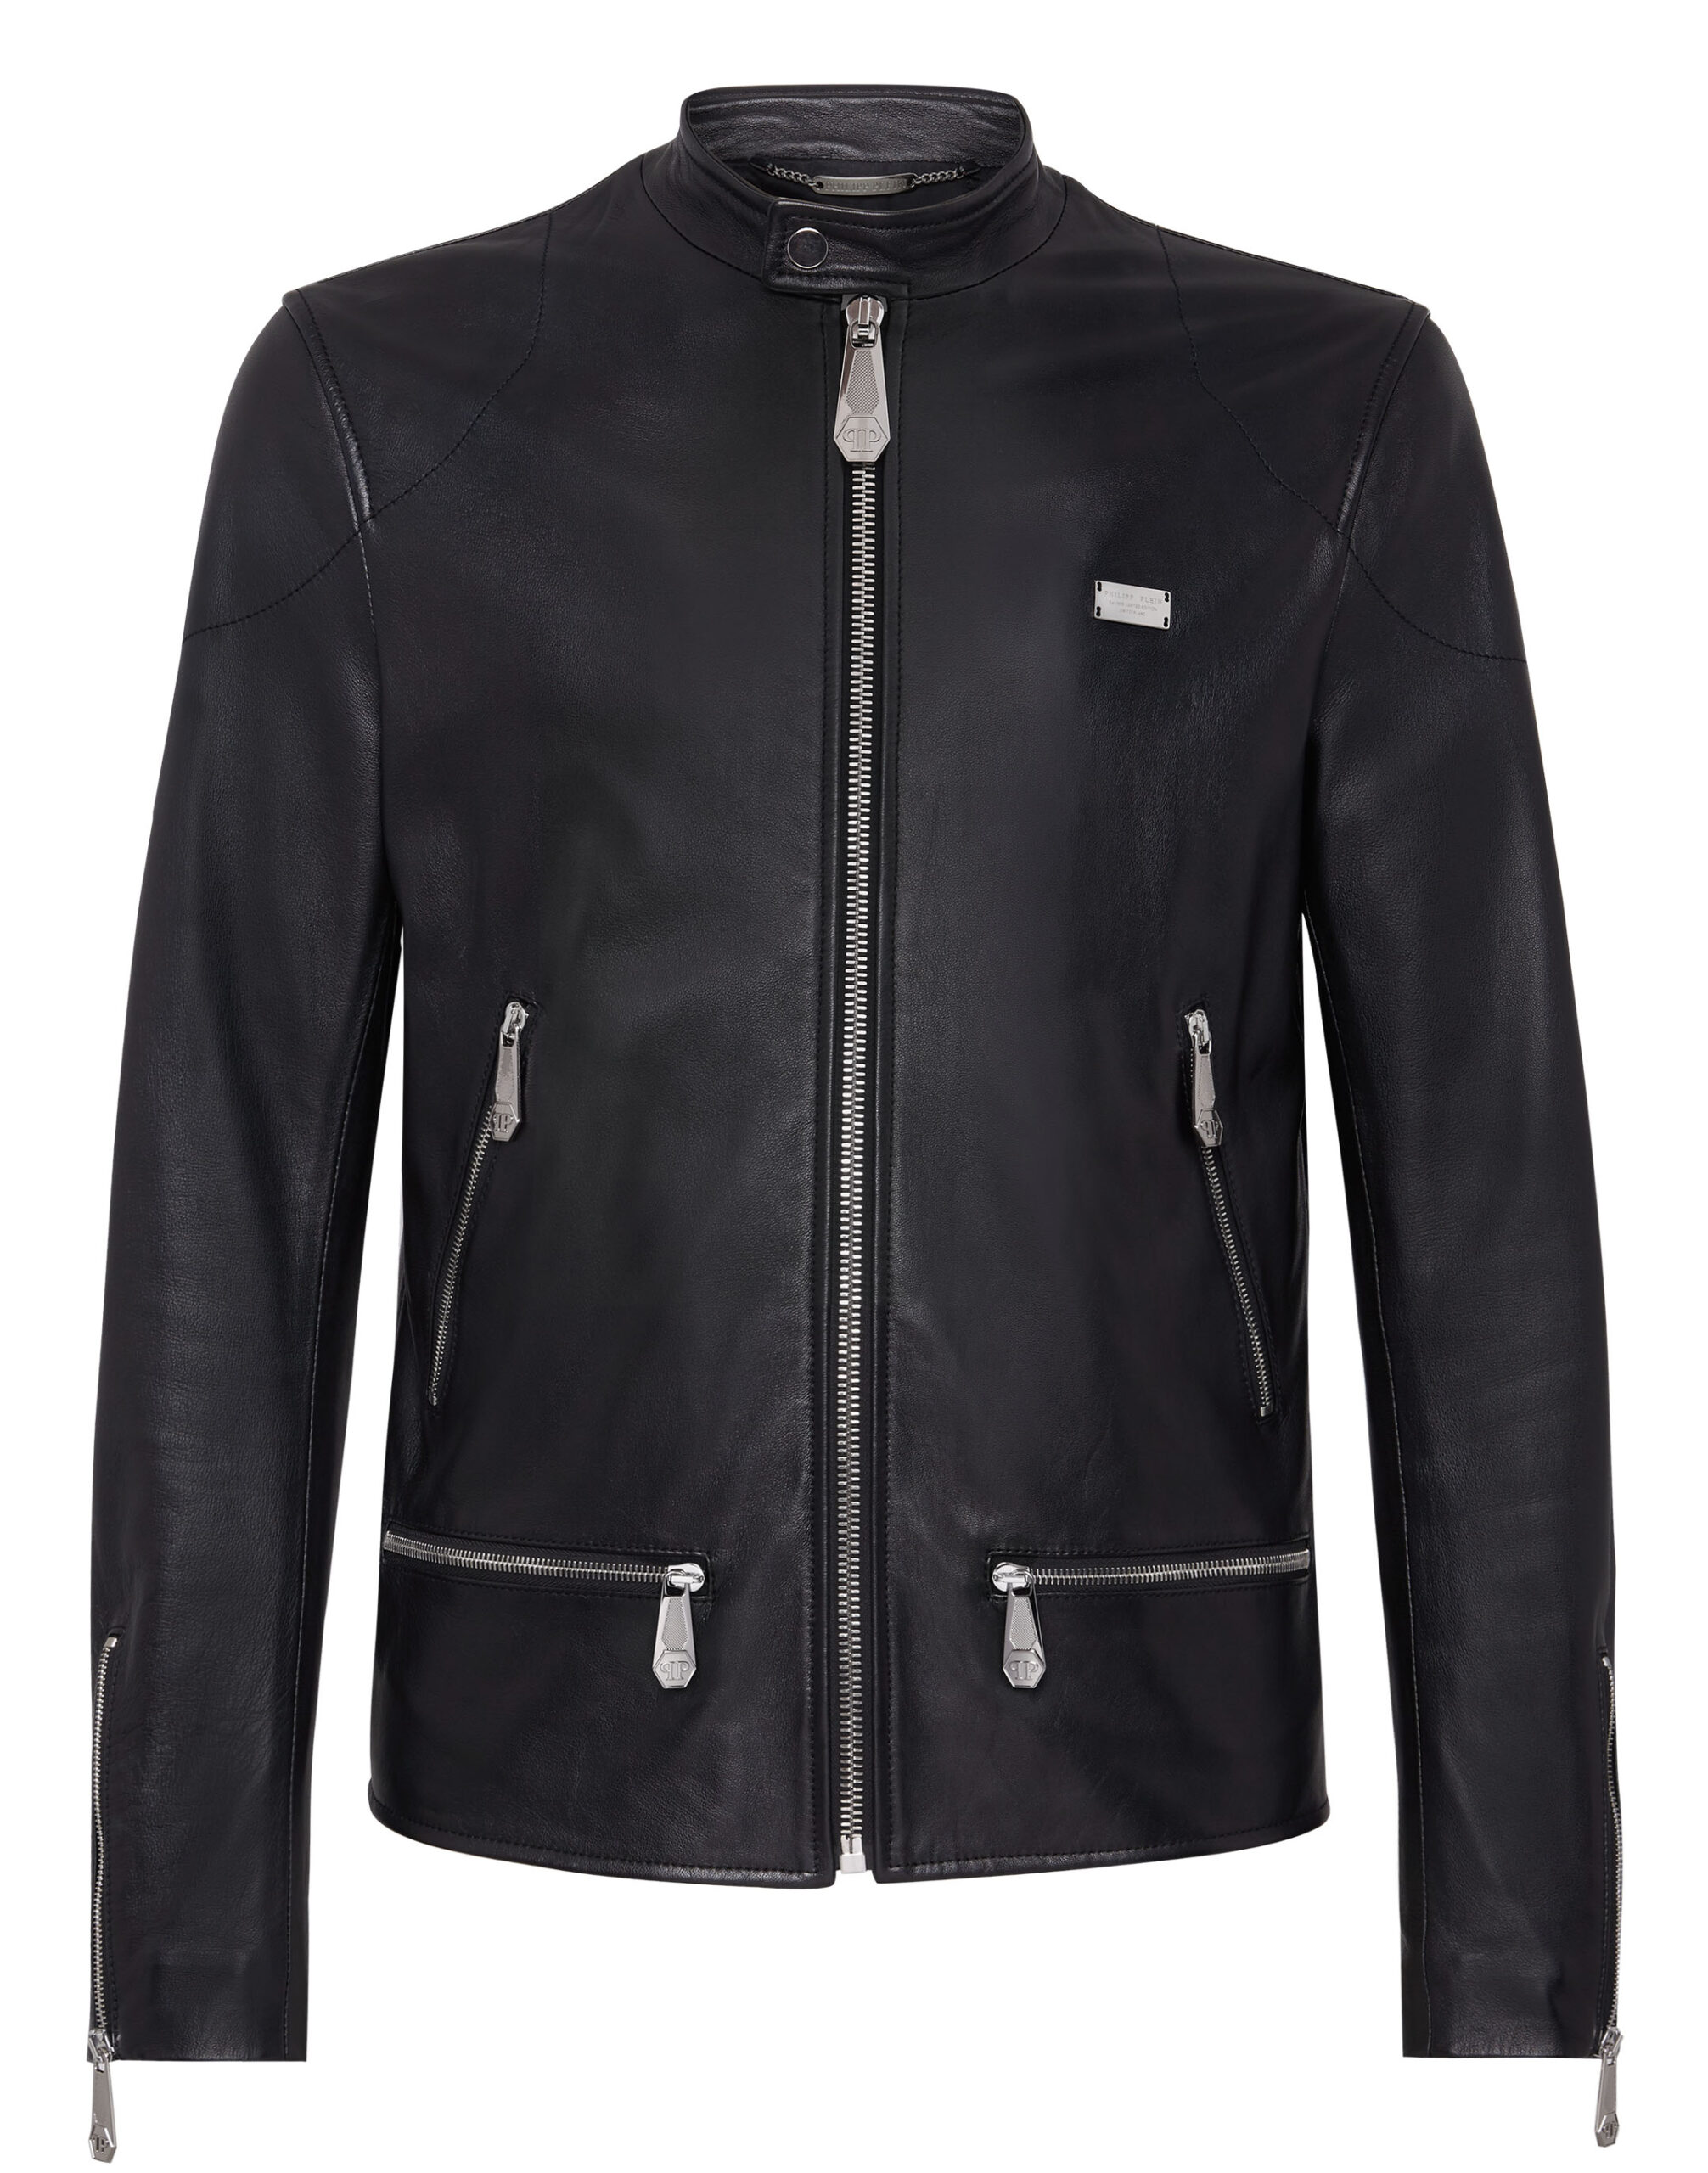 Philipp Plein Lambskin Jacket - Leather Guys: Luxury Leather Jackets